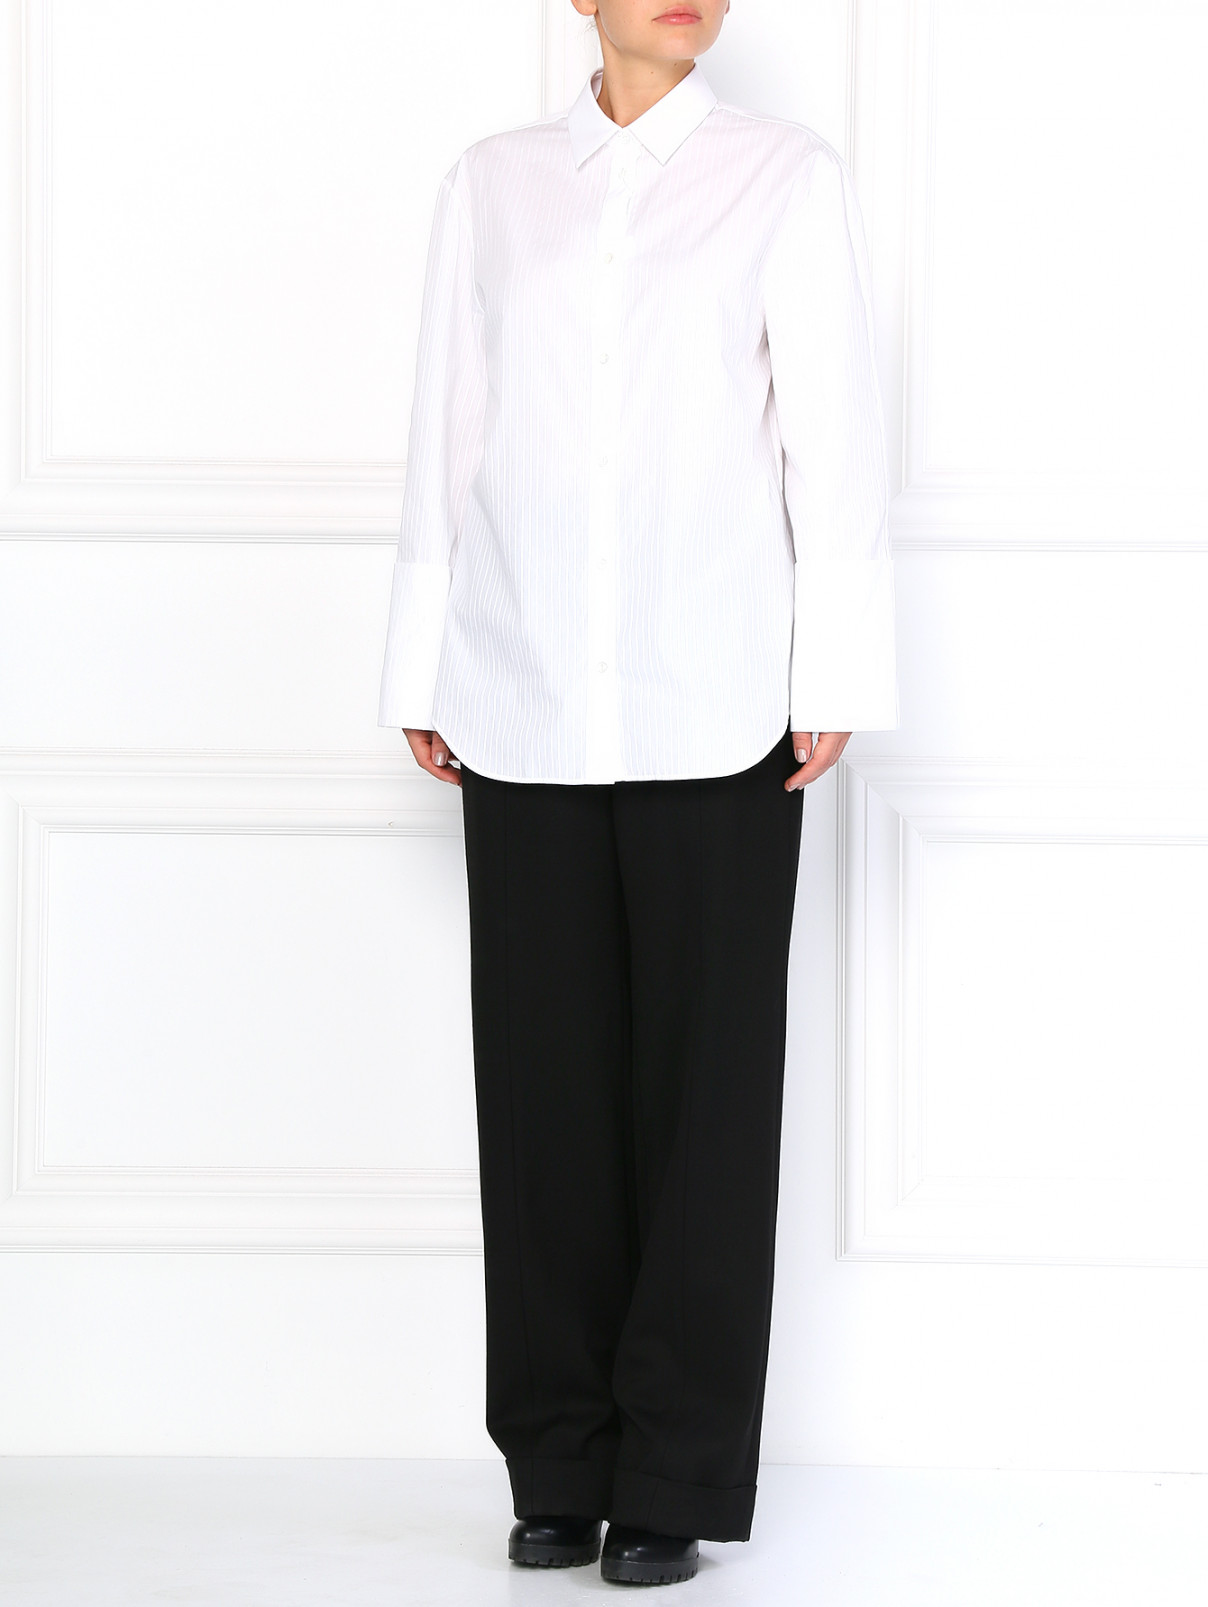 Шерстяные брюки с манжетами и боковыми карманами Maison Margiela  –  Модель Общий вид  – Цвет:  Черный